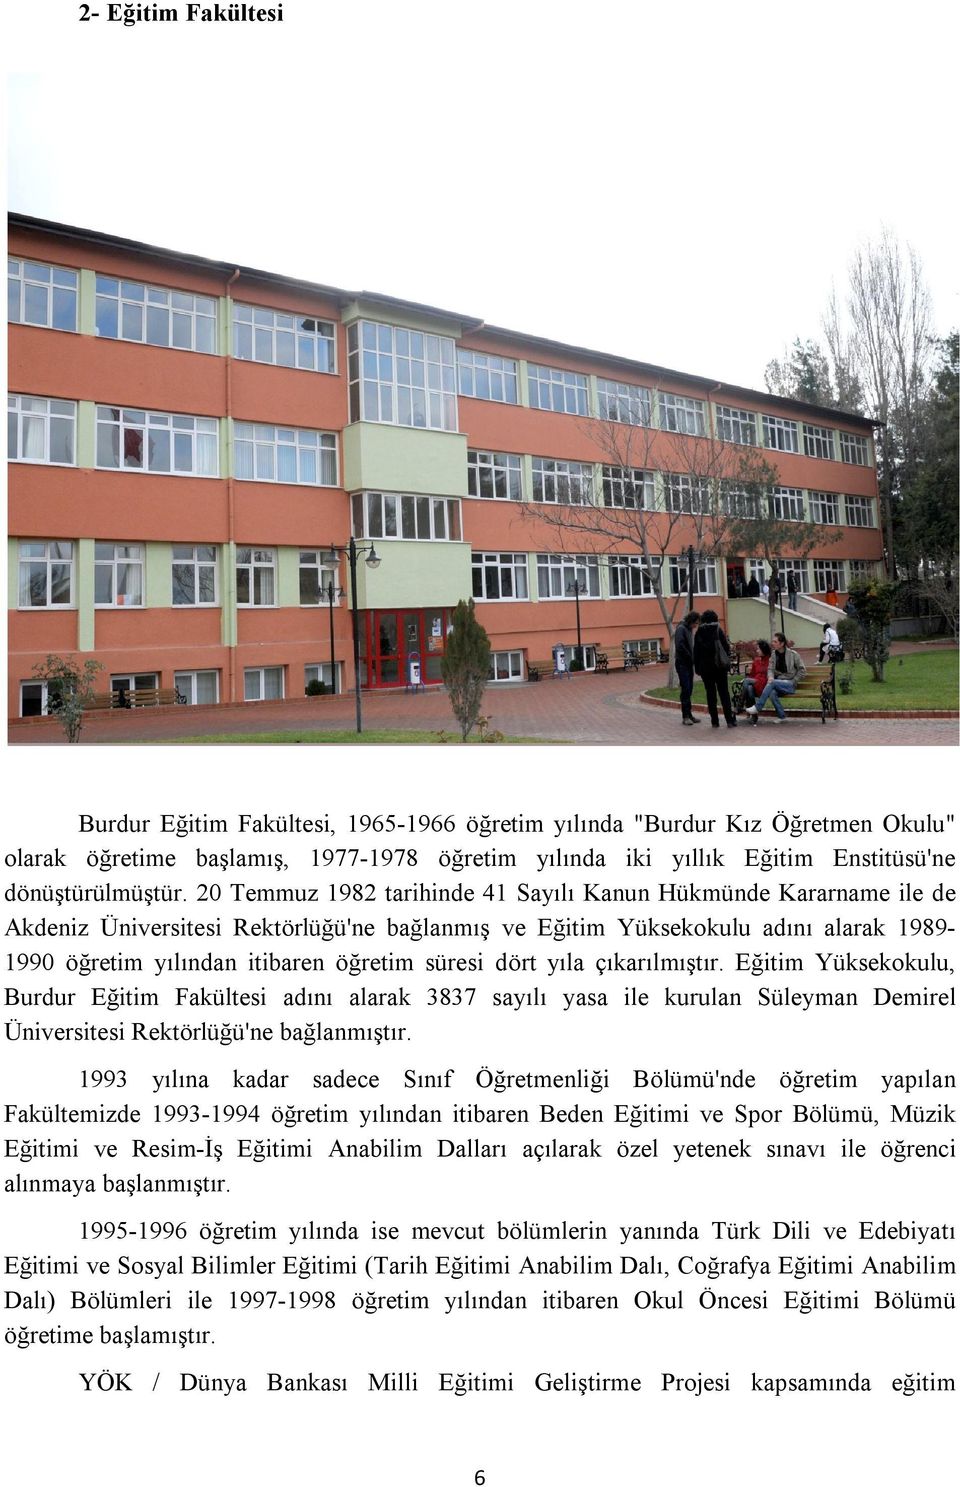 dört yıla çıkarılmıştır. Eğitim Yüksekokulu, Burdur Eğitim Fakültesi adını alarak 3837 sayılı yasa ile kurulan Süleyman Demirel Üniversitesi Rektörlüğü'ne bağlanmıştır.